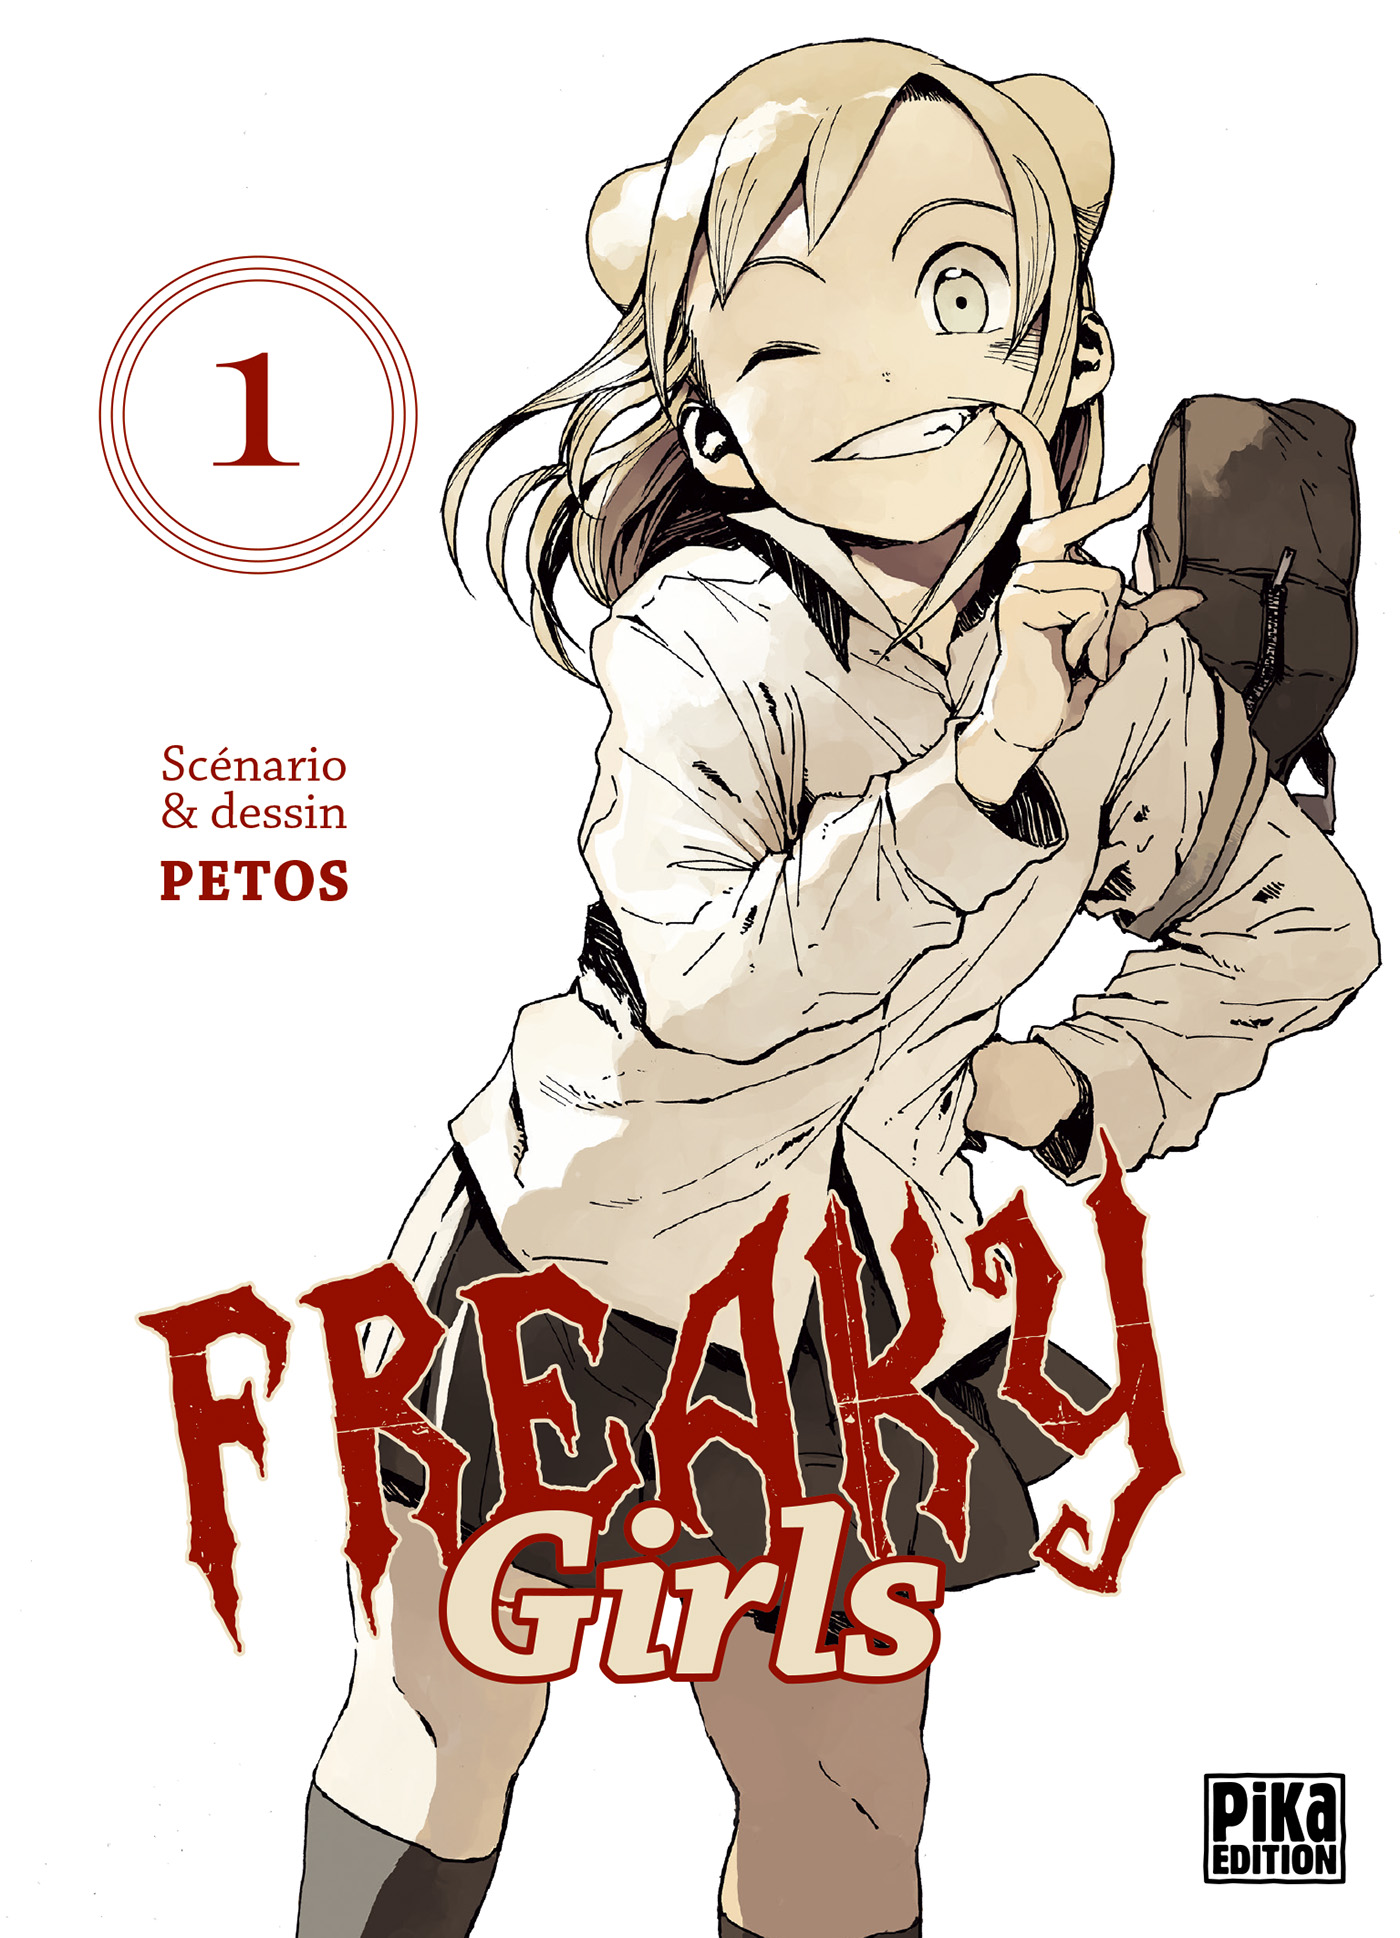 Freaky Girls tome 1 de Petos, un autre moyen de parler de la différence